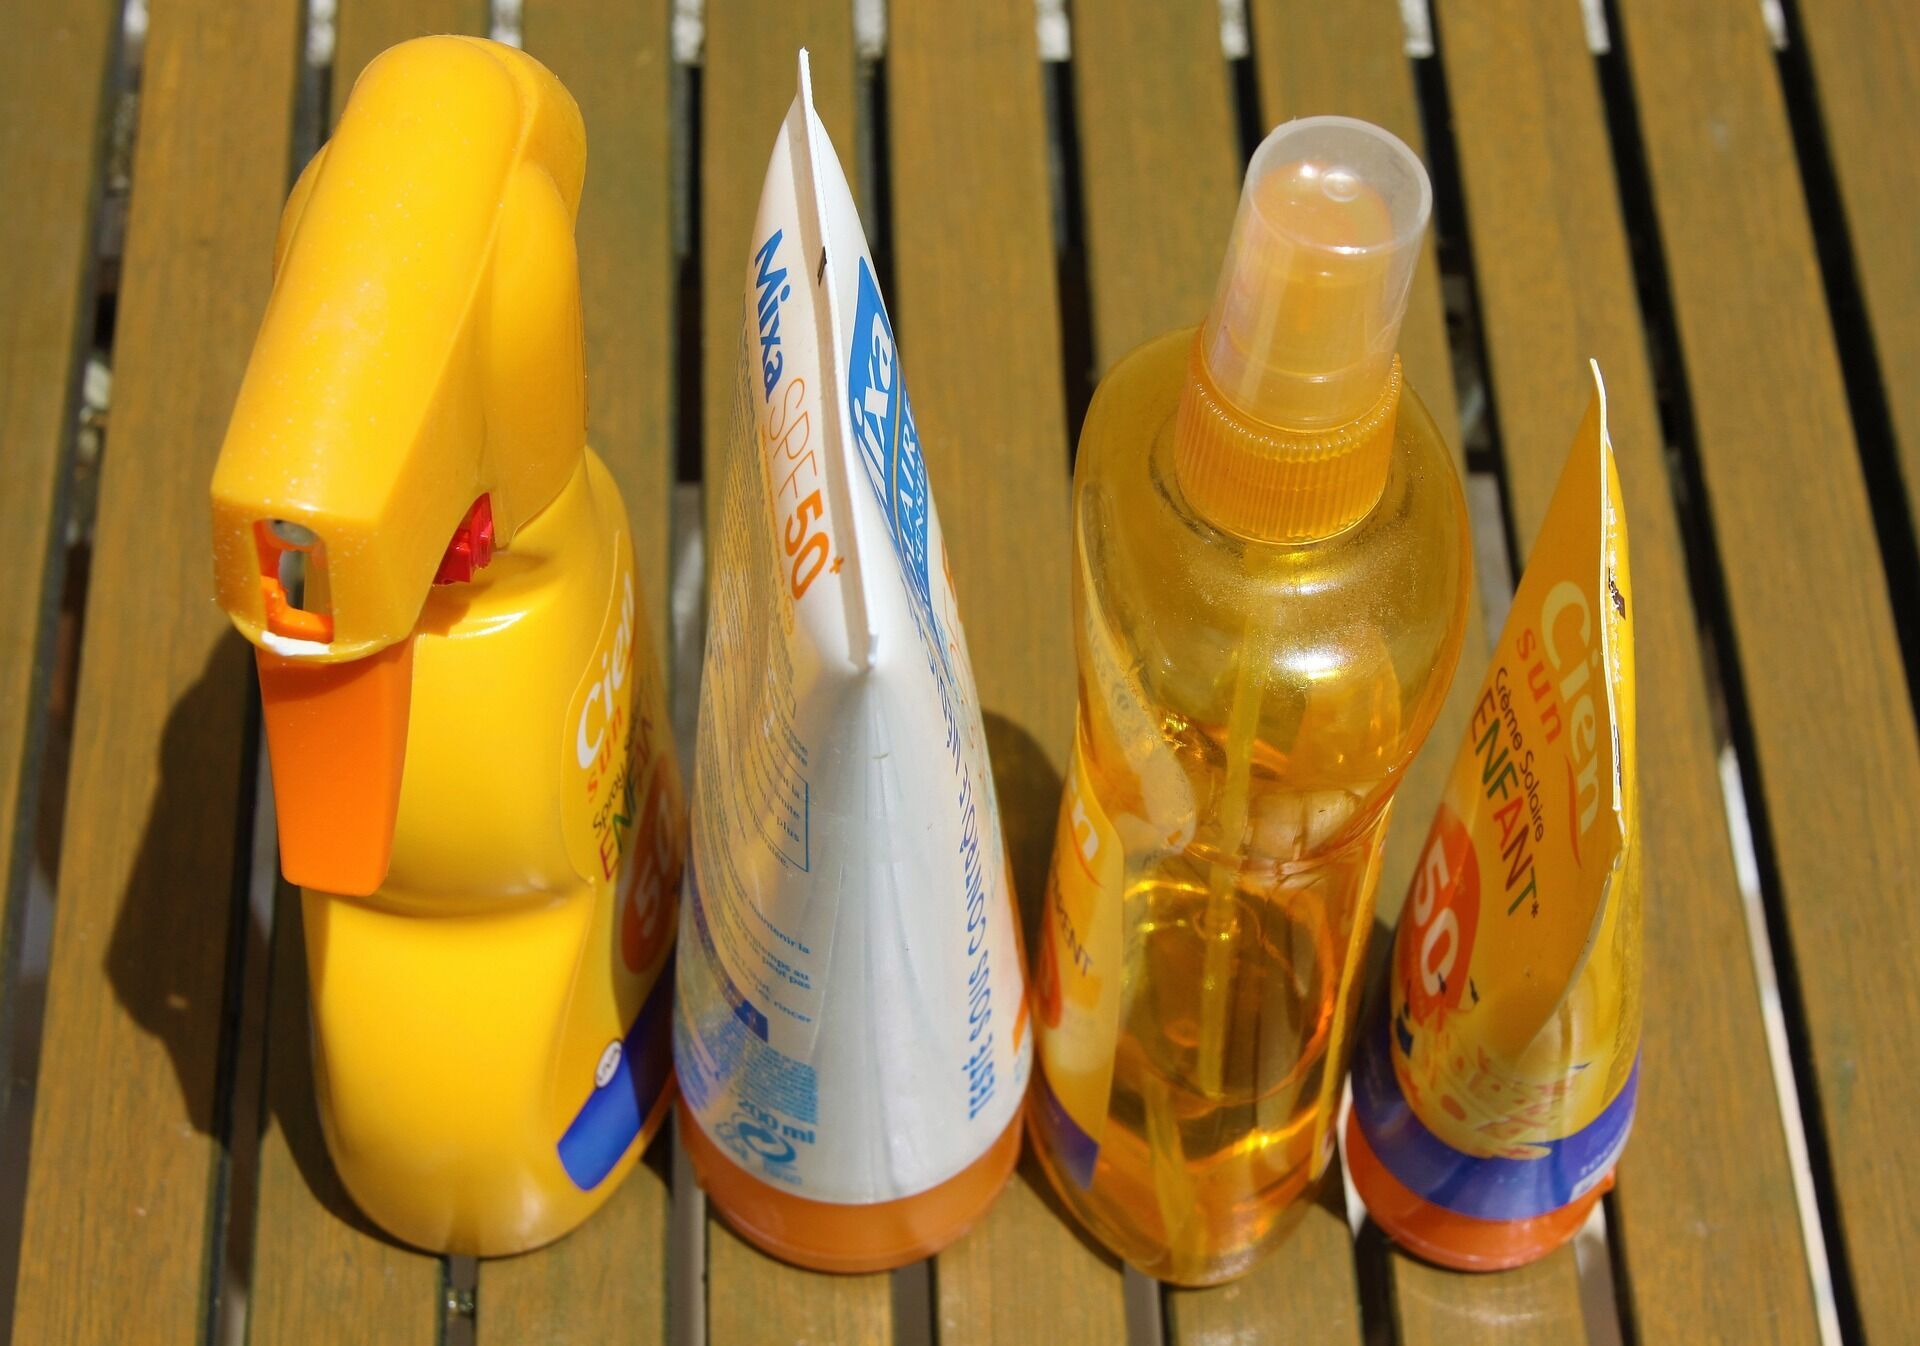 Сонцезахисний крем небезпечний, чи це панацея від усіх проблем? 5 міфів про популярний косметичний засіб, яким не варто вірити